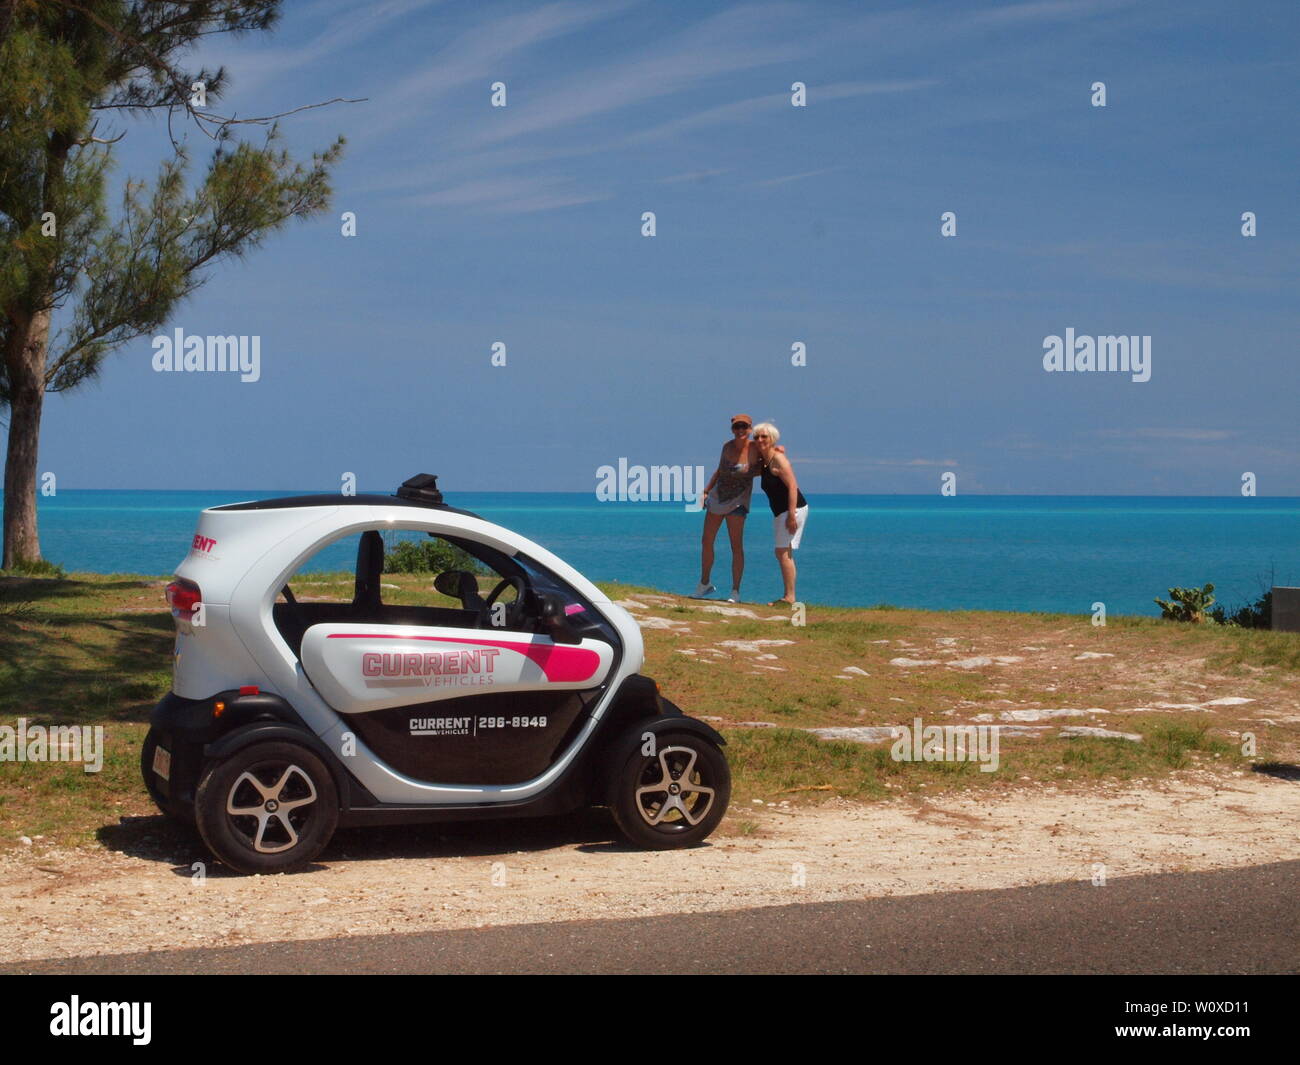 La dernière aventure de voyage de tourisme aux Bermudes. La Renault Twizy, un véhicule électrique qui permet la liberté et l'indépendance de visiter en toute sécurité. Banque D'Images